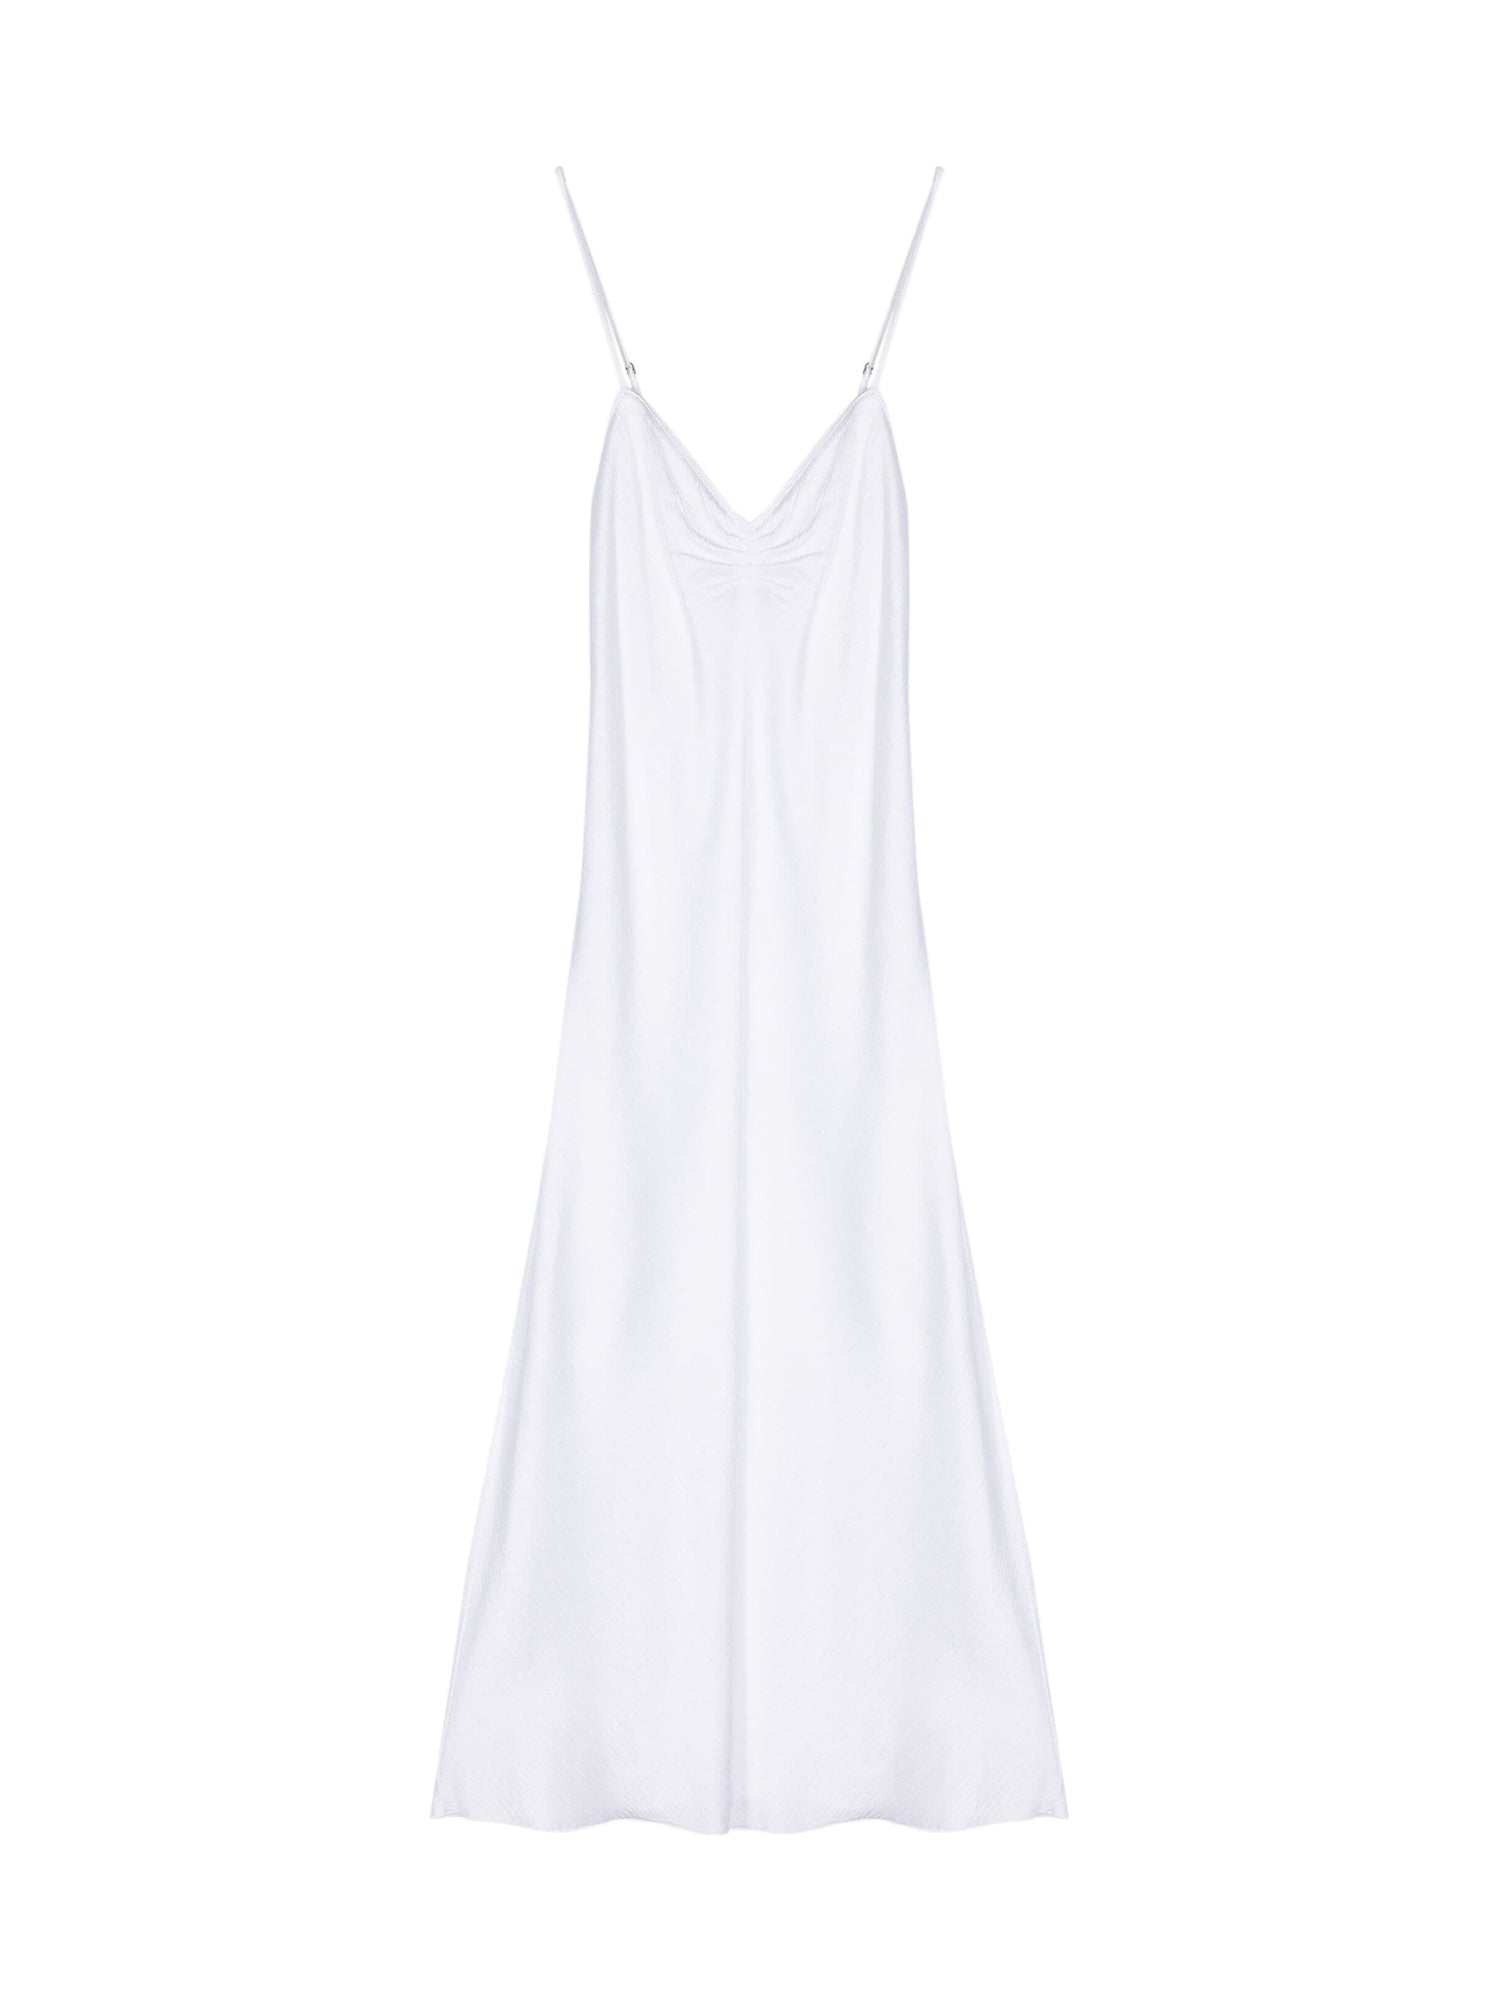 Viscose Satin Strap Dress, white